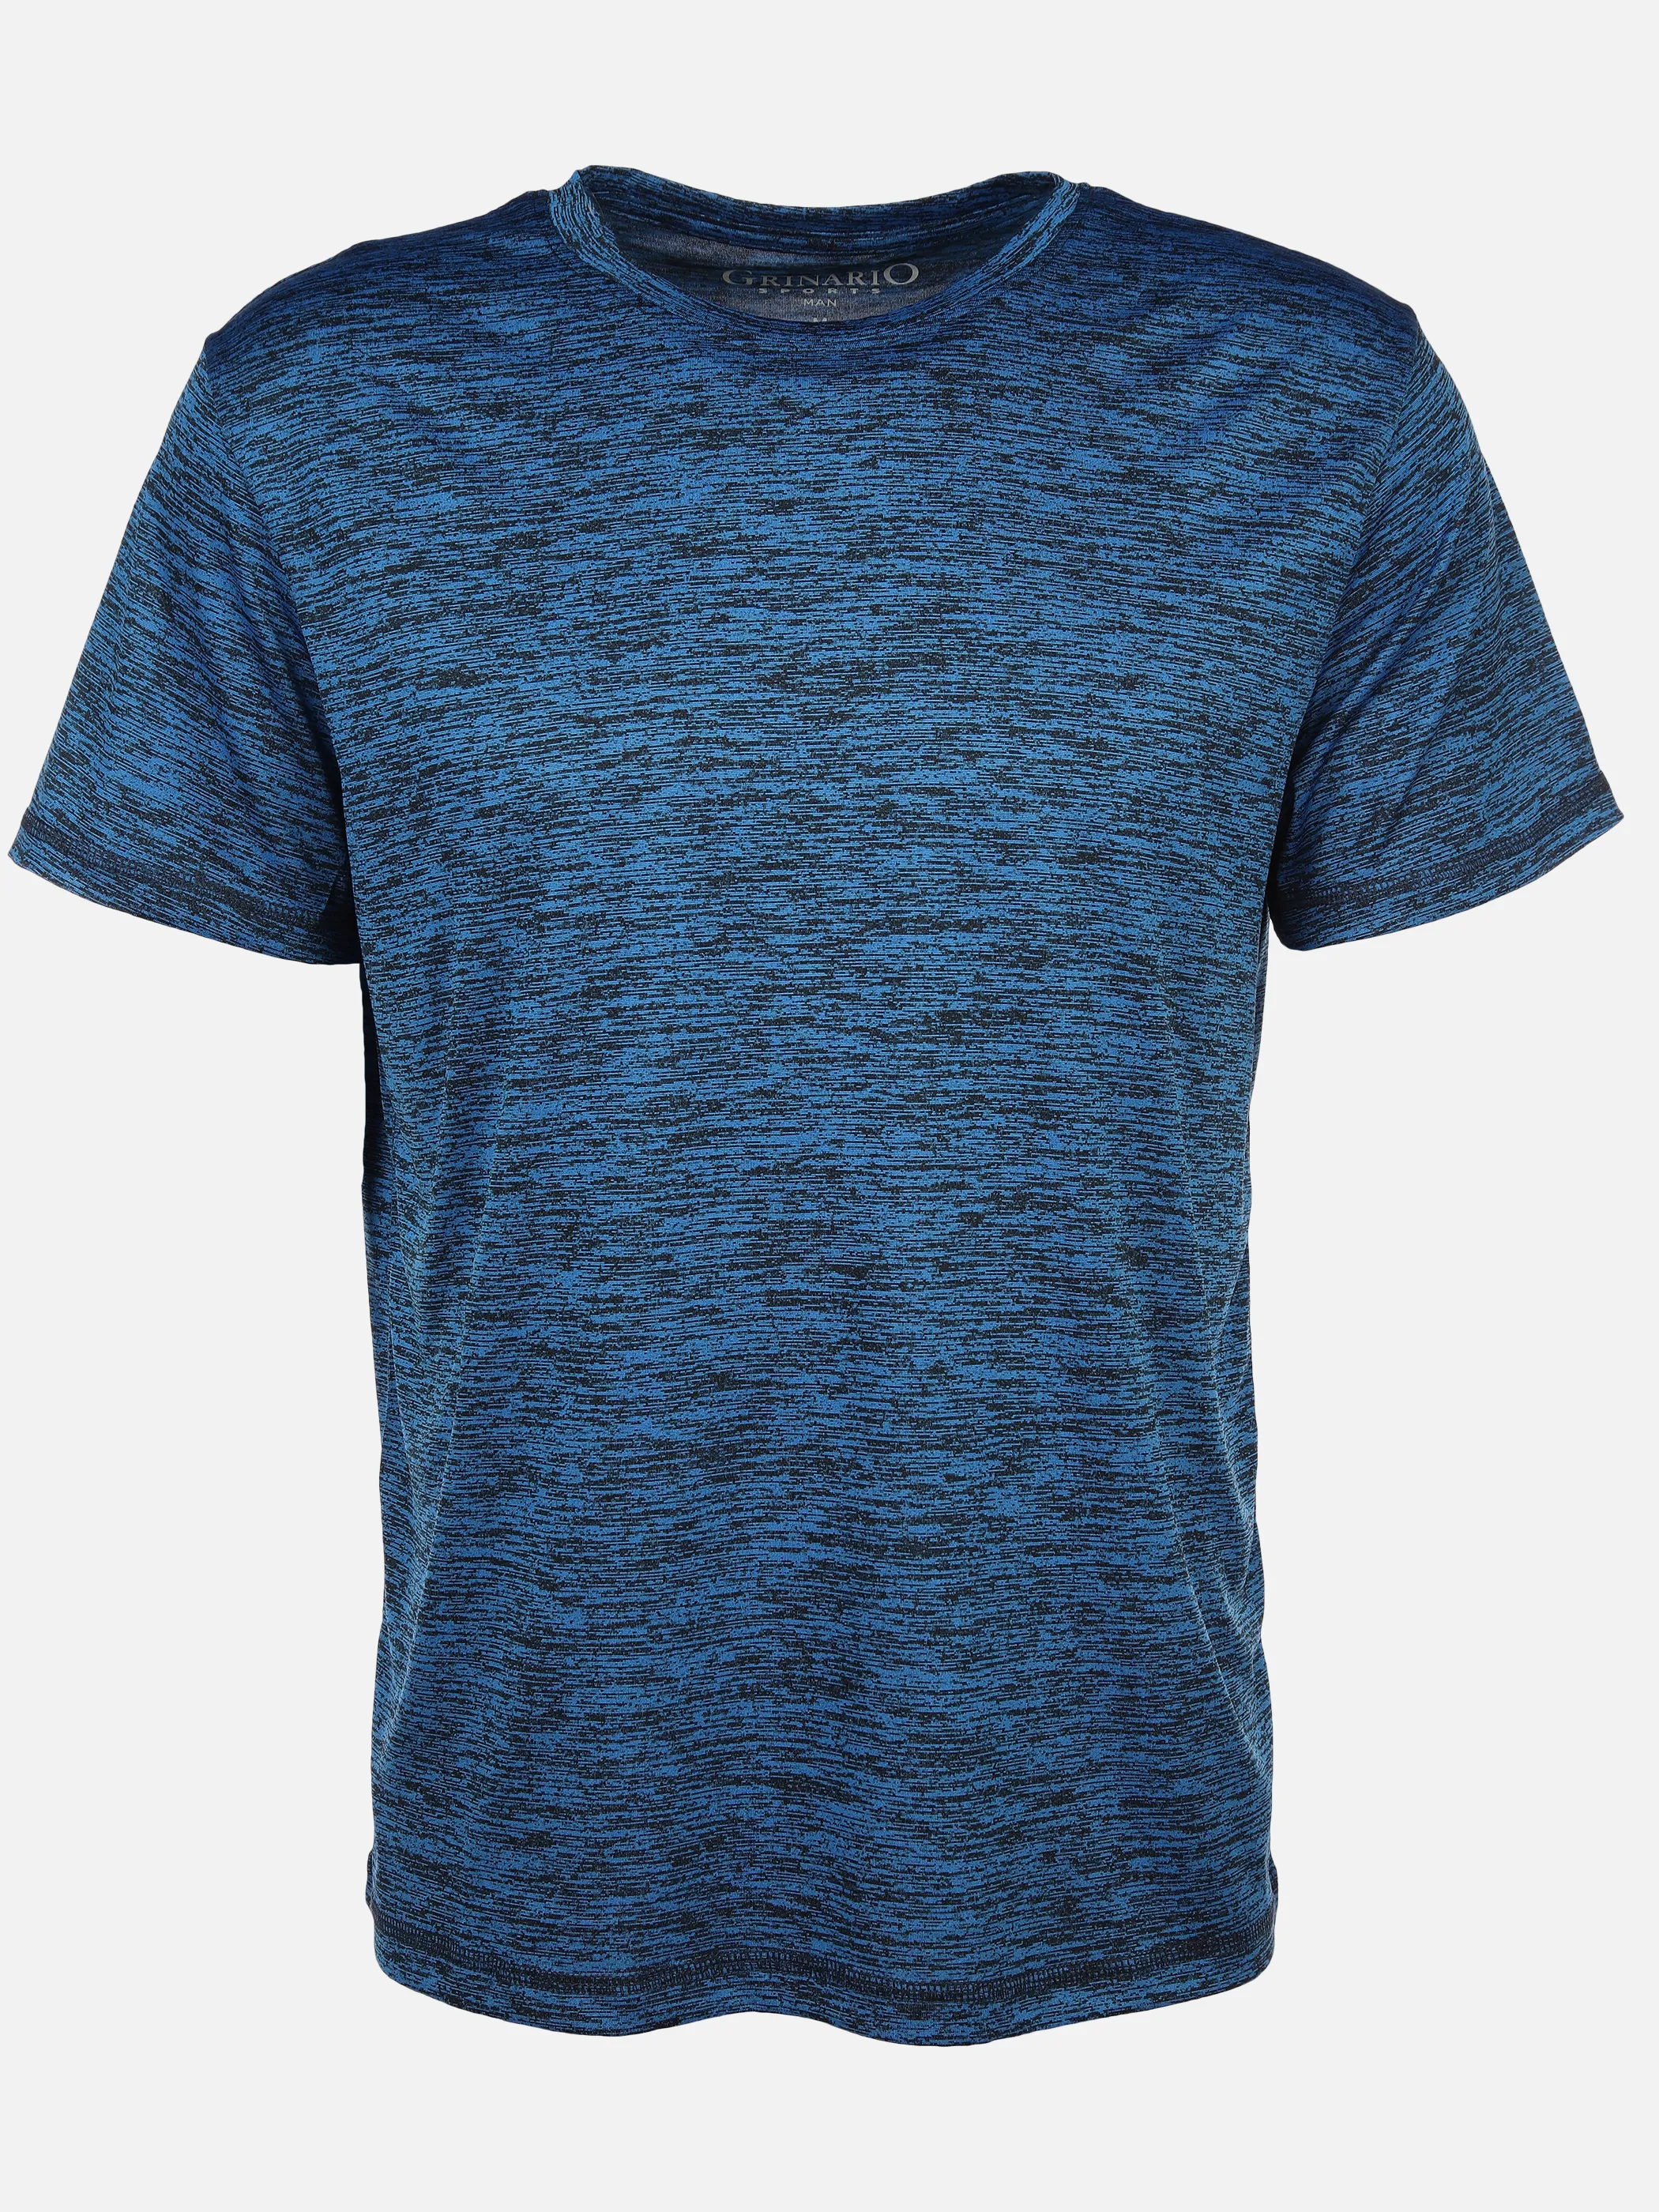 Grinario Sports He- Sport T-Shirt Blau 890091 BLUE MEL. 1